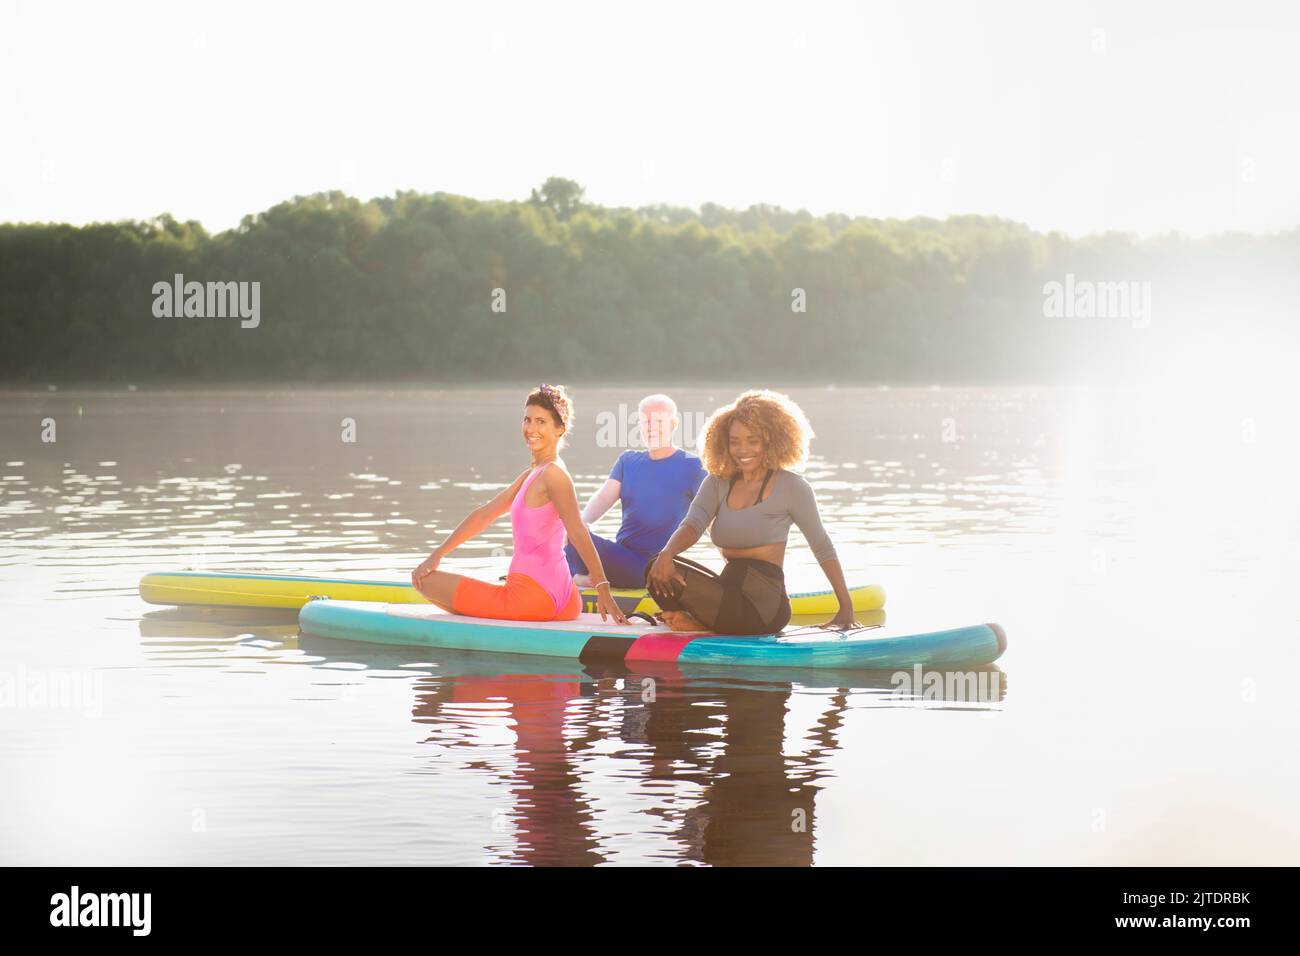 Gruppe von Menschen, die sich um ihre psychische Gesundheit kümmern, indem sie sich auf SUP-Boards entspannen Stockfoto